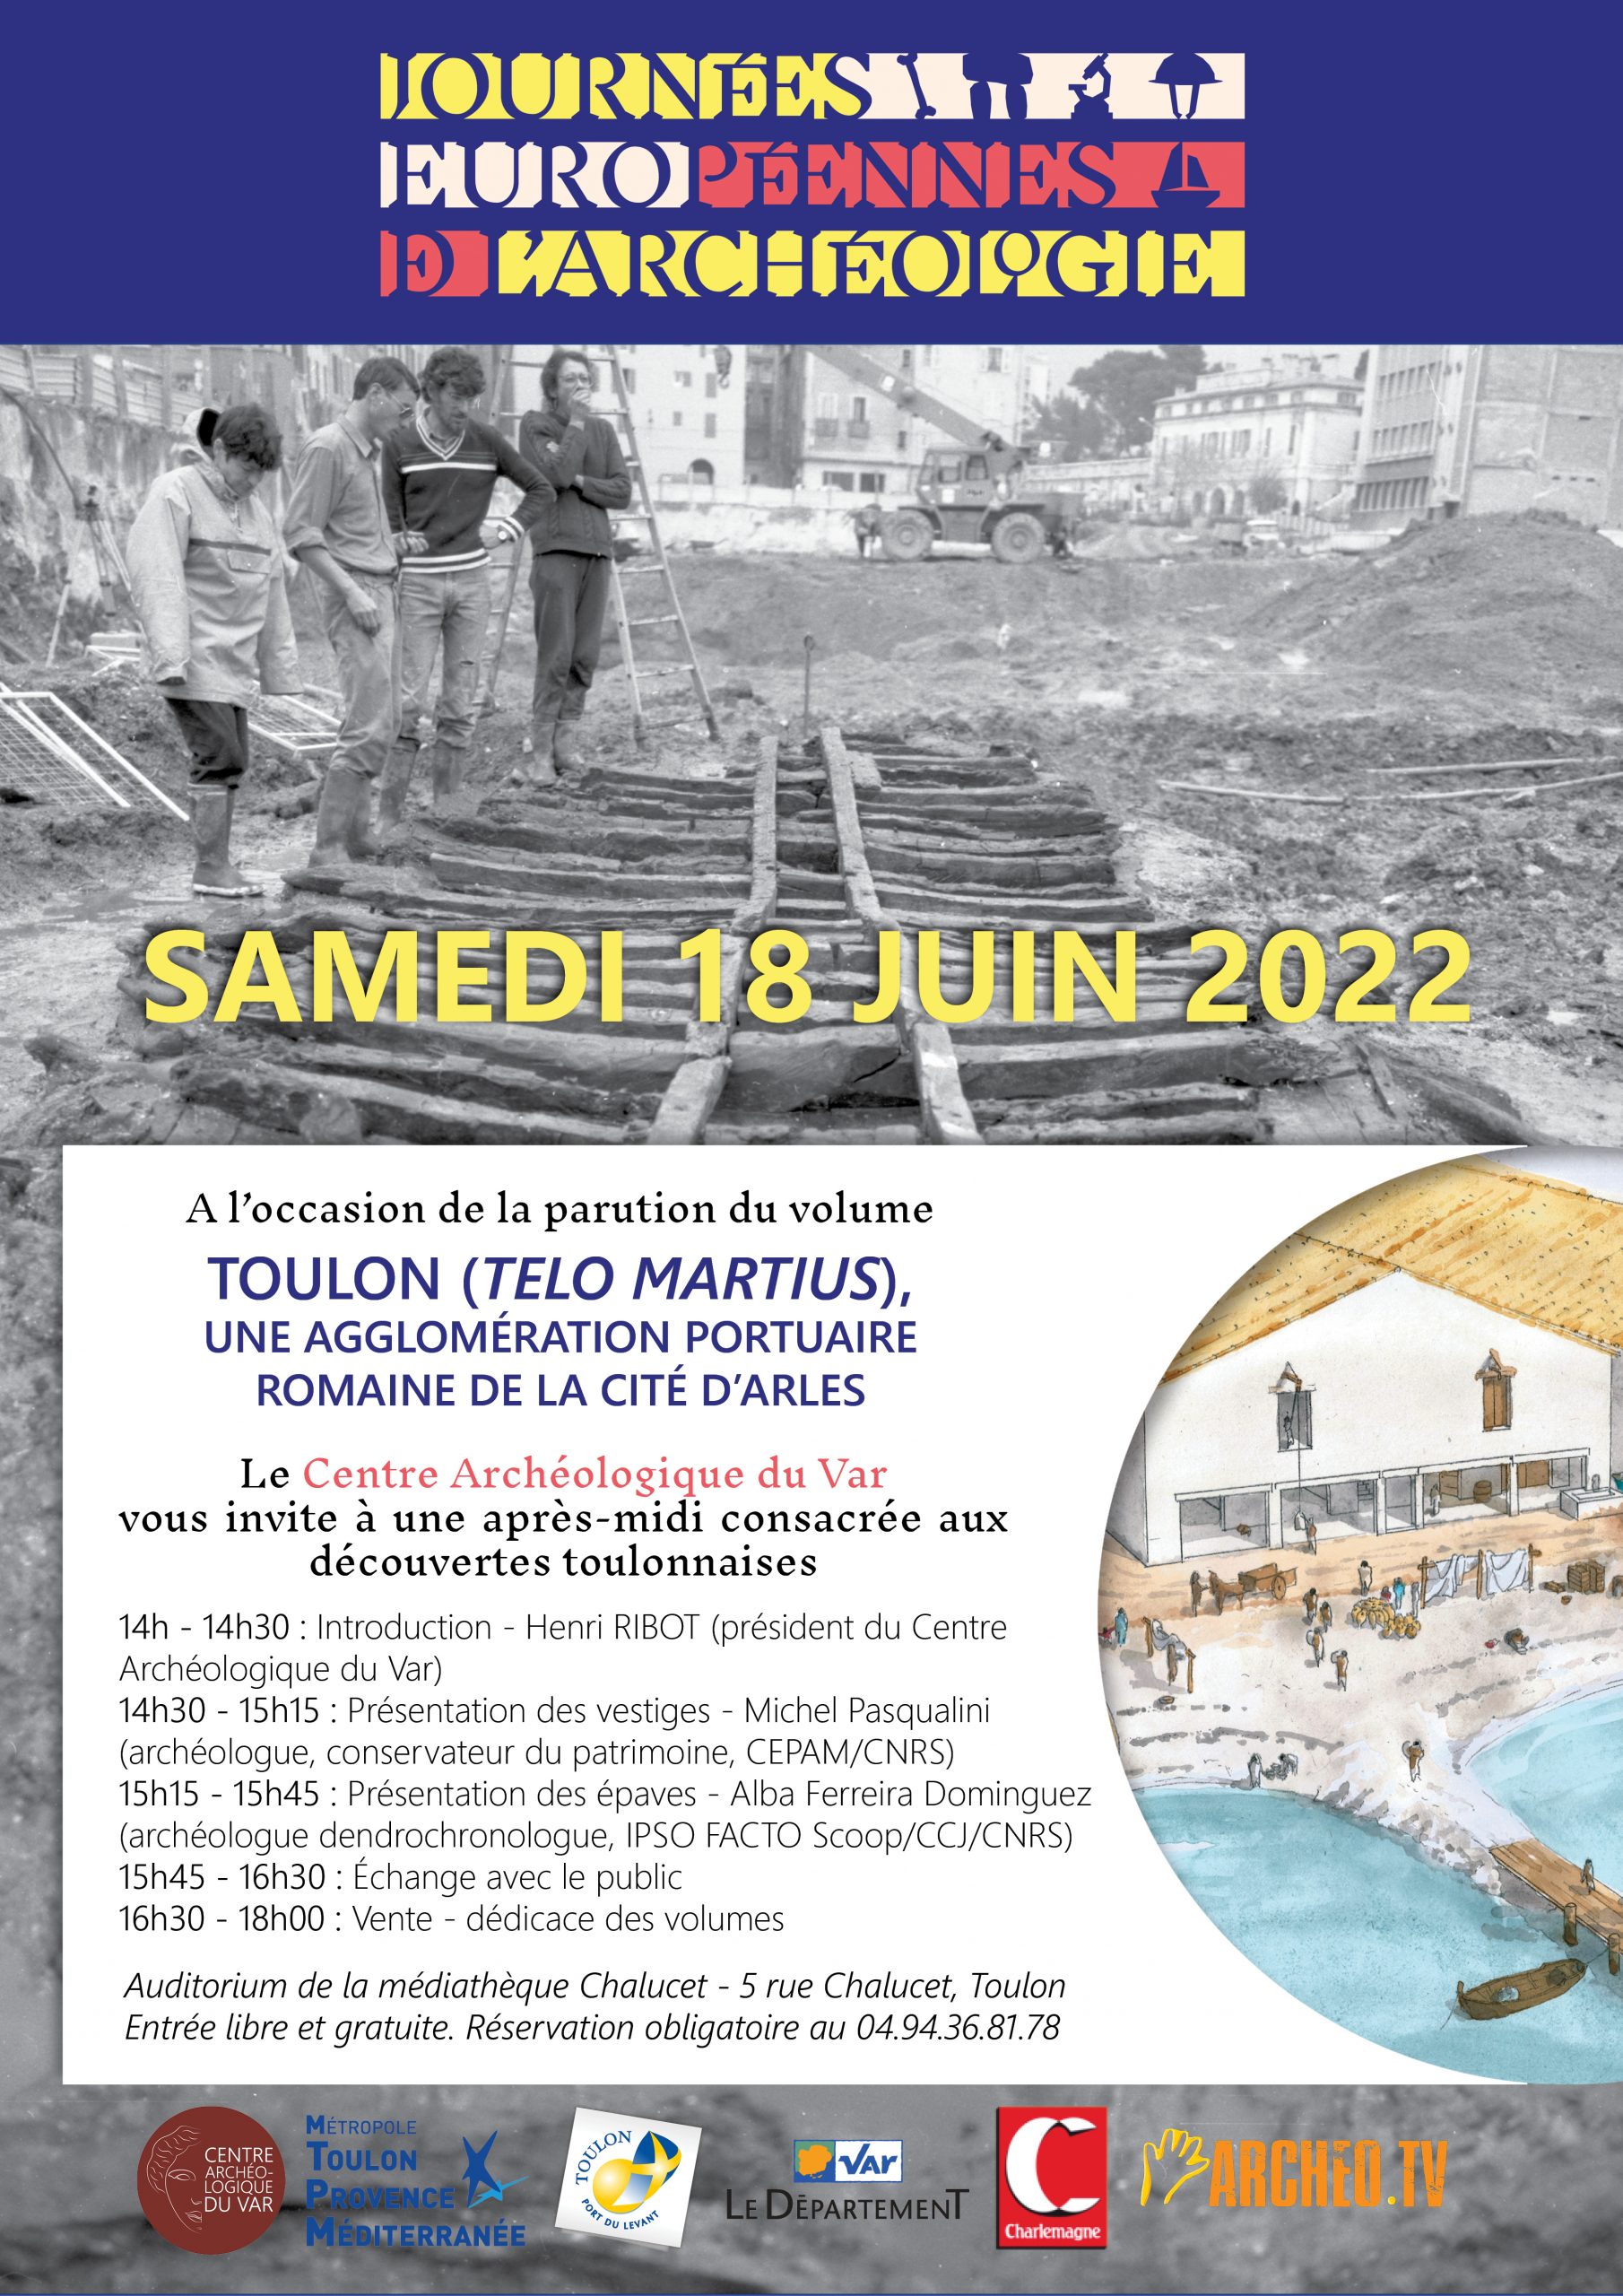 You are currently viewing Journées Européennes de l’Archéologie 2022 – Conférences